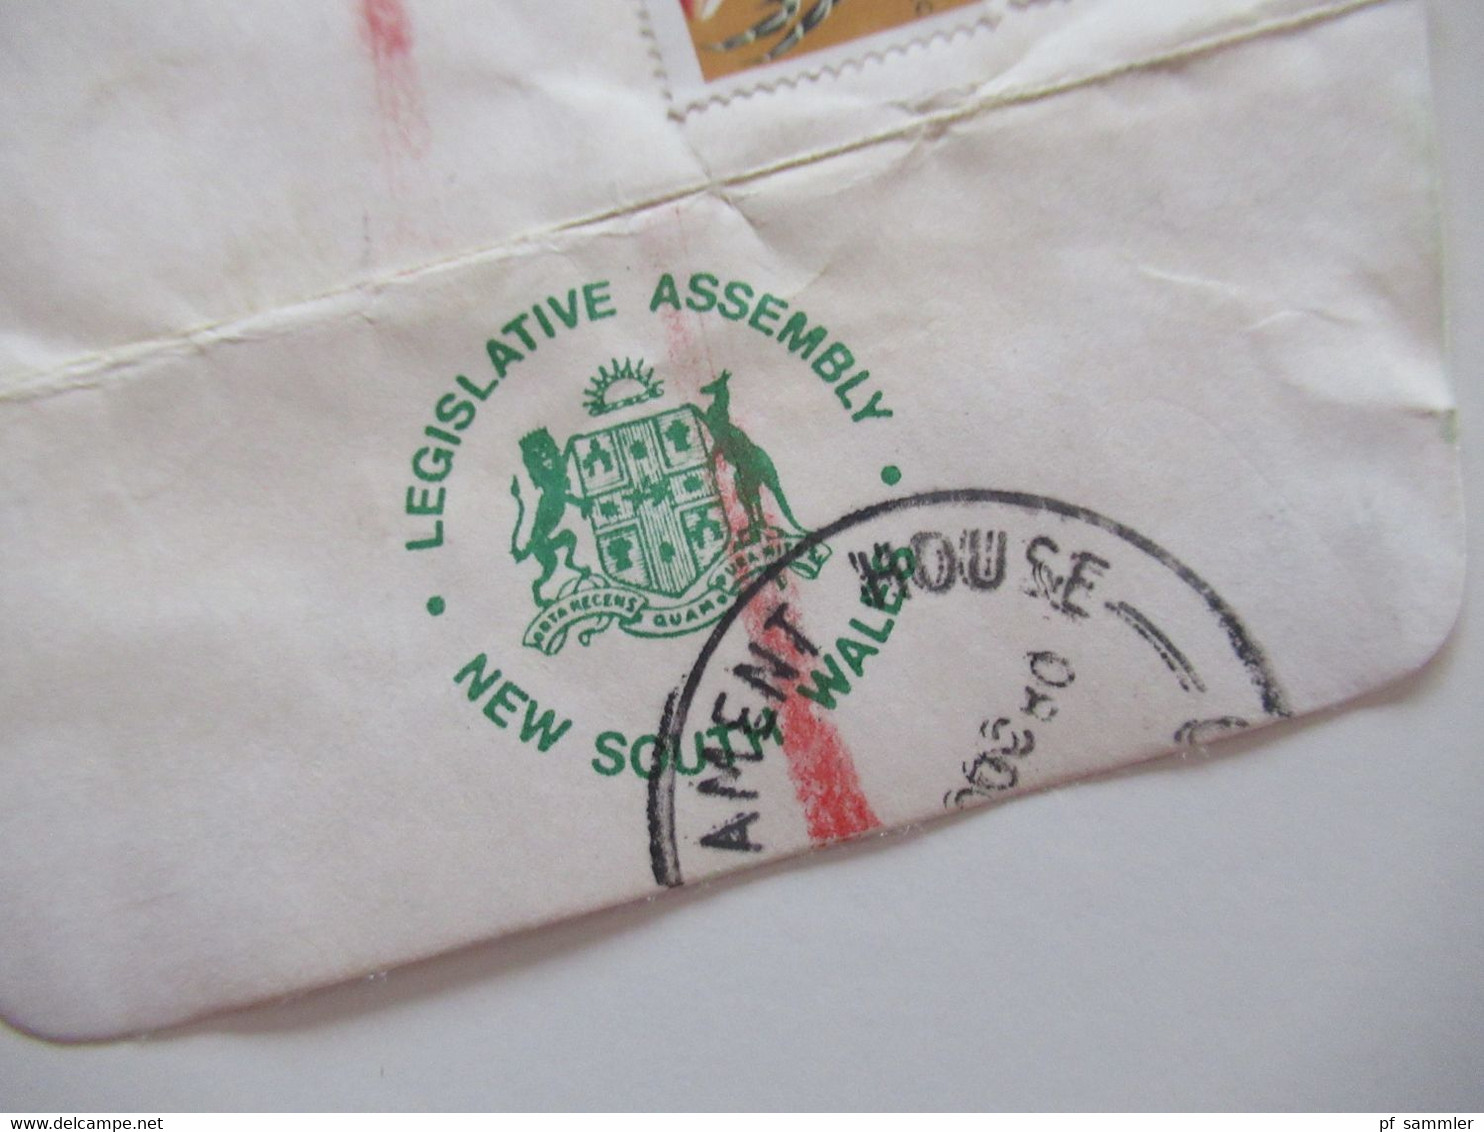 Australien 1980 Air Mail In Die USA Einschreiben Parliament House New South Wales Umschlag Legislative Assembly - Cartas & Documentos